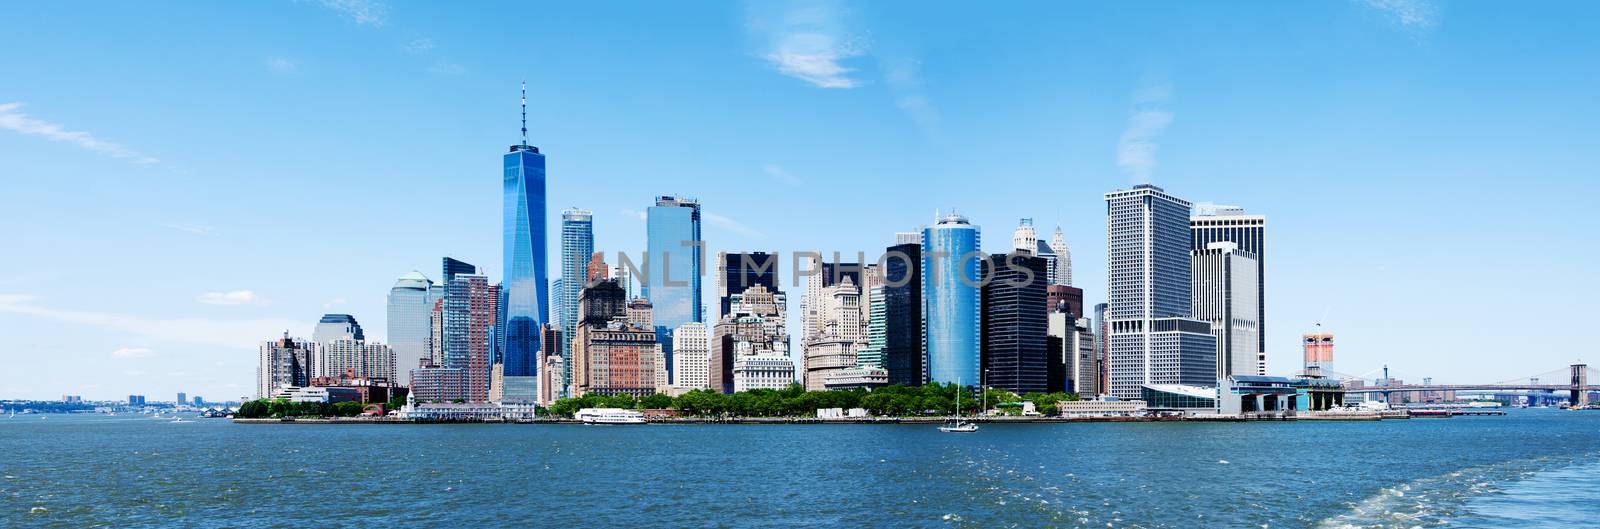 Panorama New York City Manhattan Skyline and Freedom Tower by phakimata